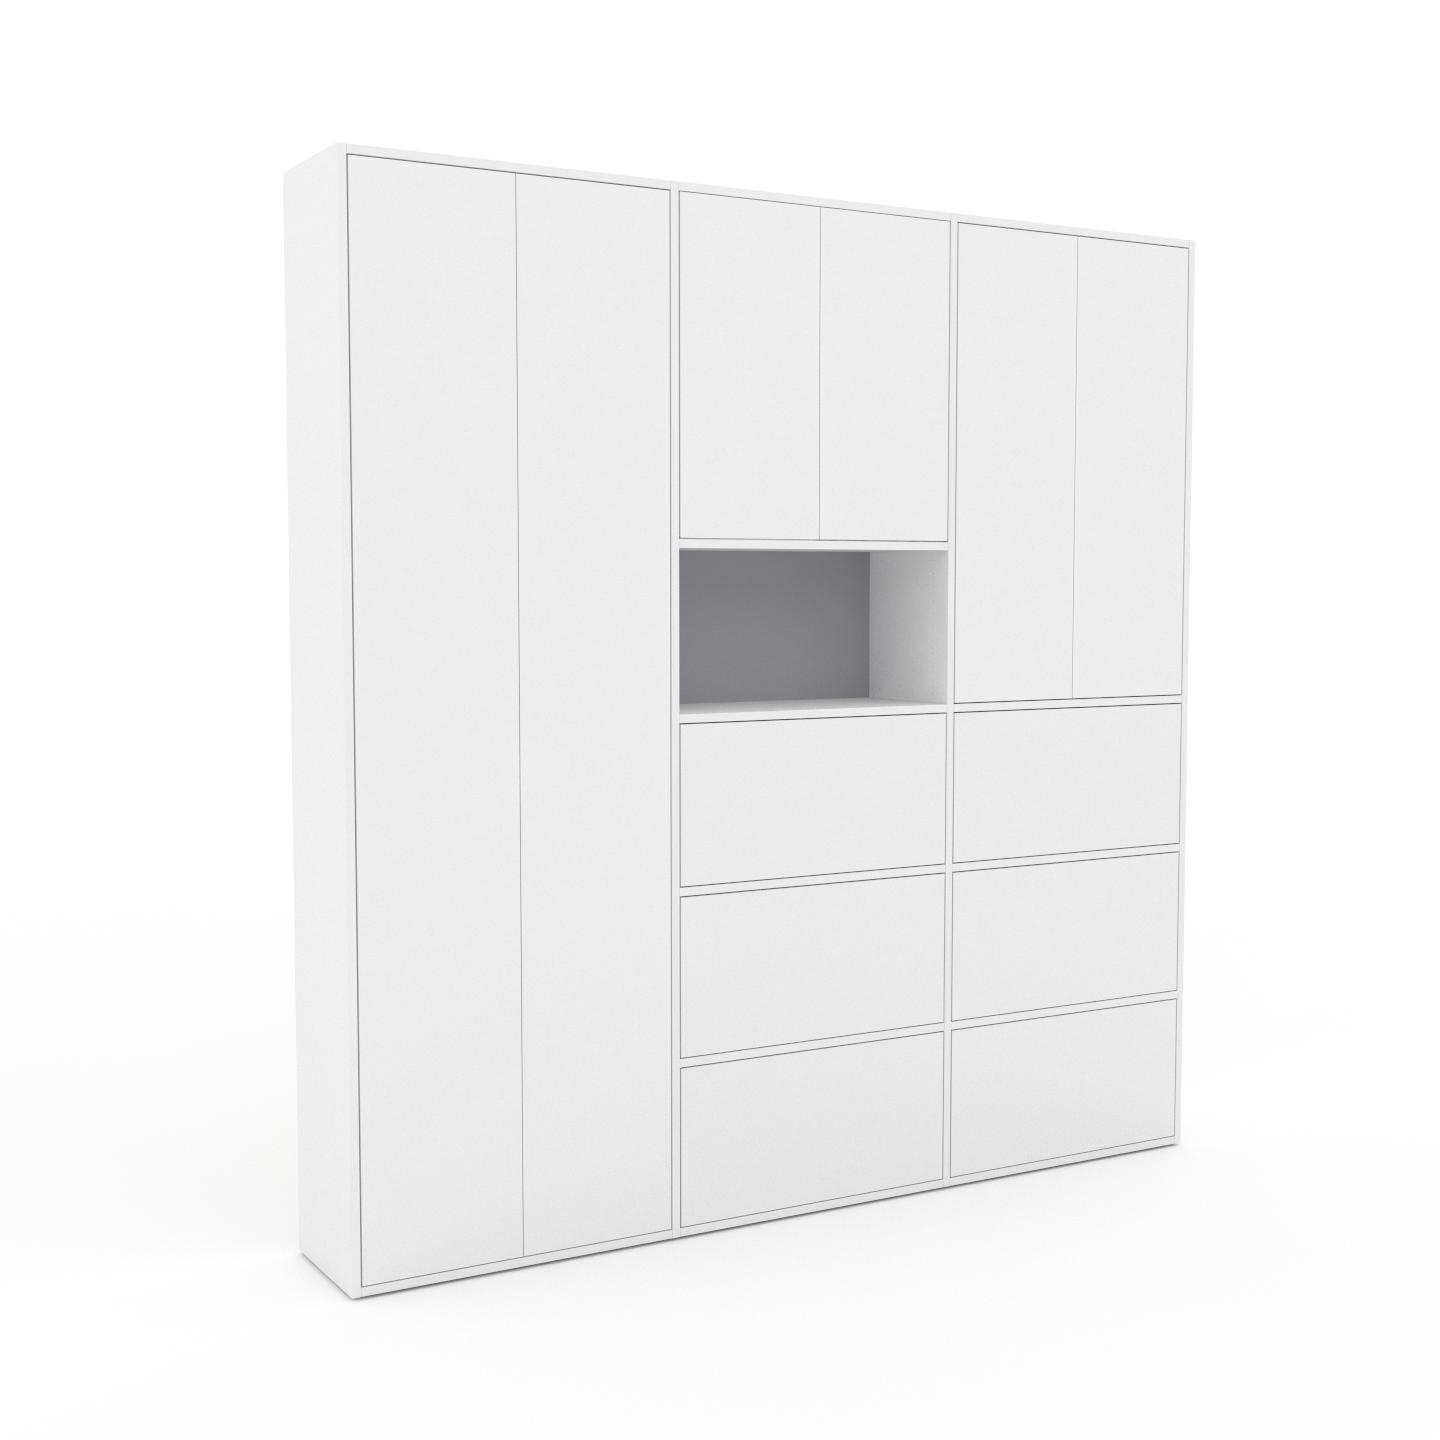 MYCS Wohnwand Weiß - Individuelle Designer-Regalwand: Schubladen in Weiß & Türen in Weiß - Hochwertige Materialien - 226 x 233 x 35 cm, Konfigurator